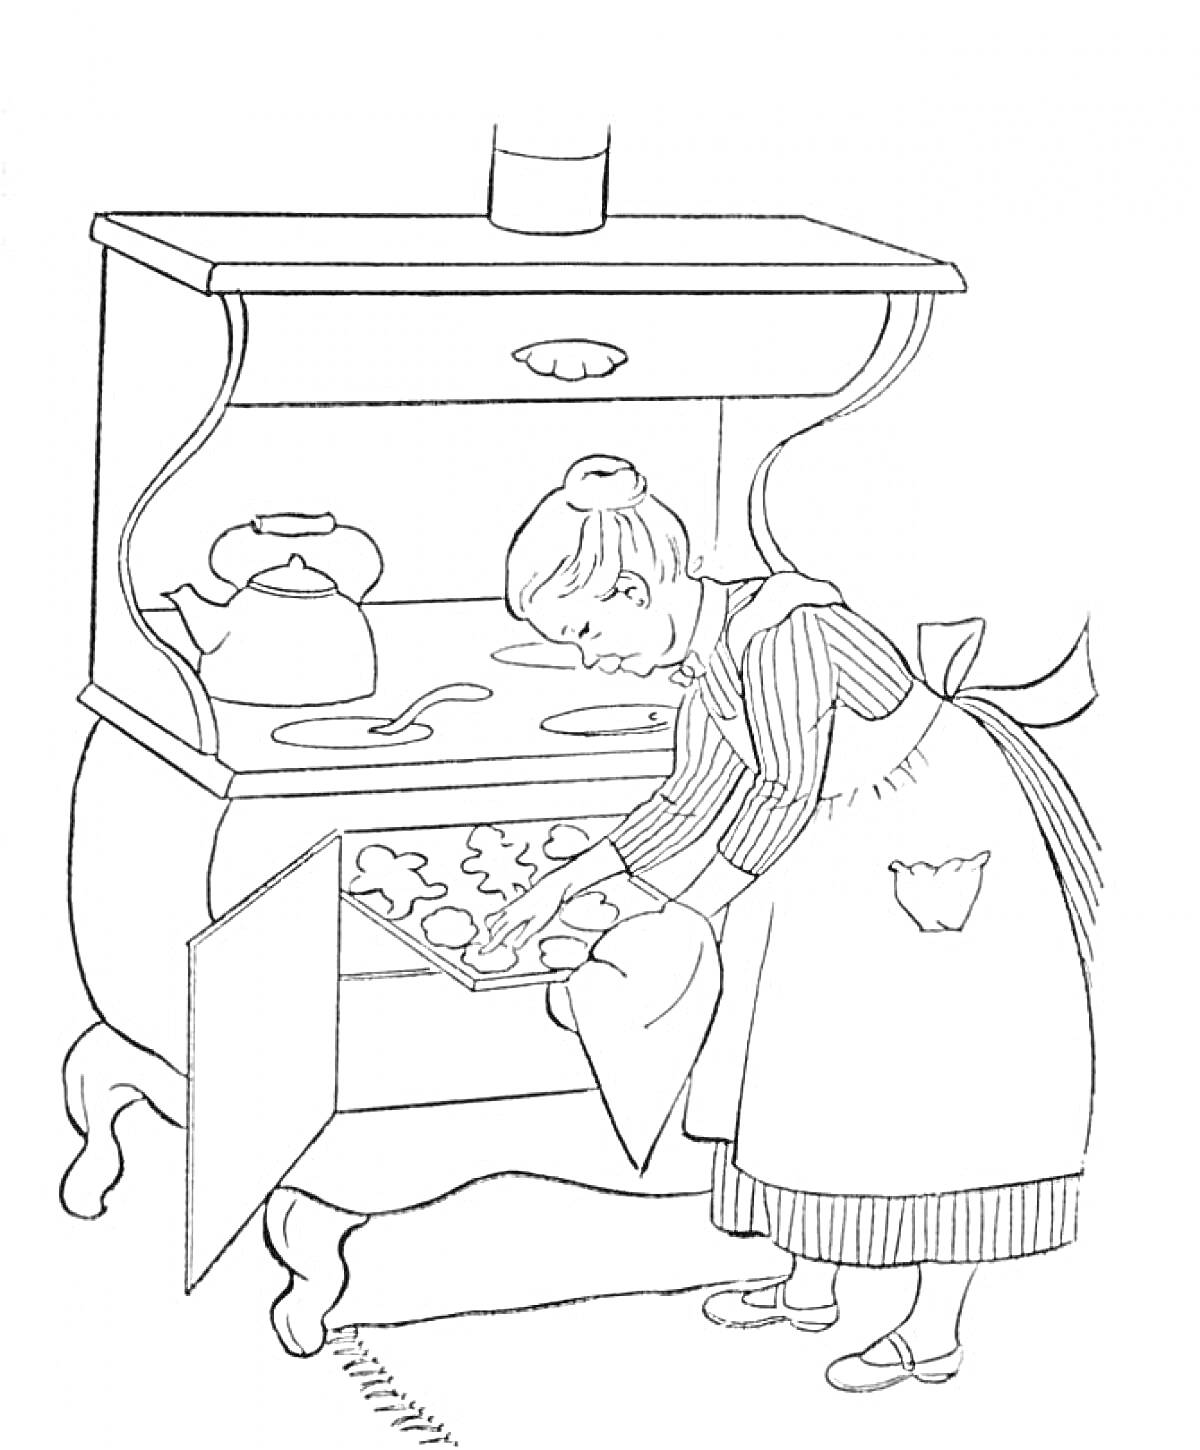 Бабушка у плиты с духовкой, ставит выпечку на противень